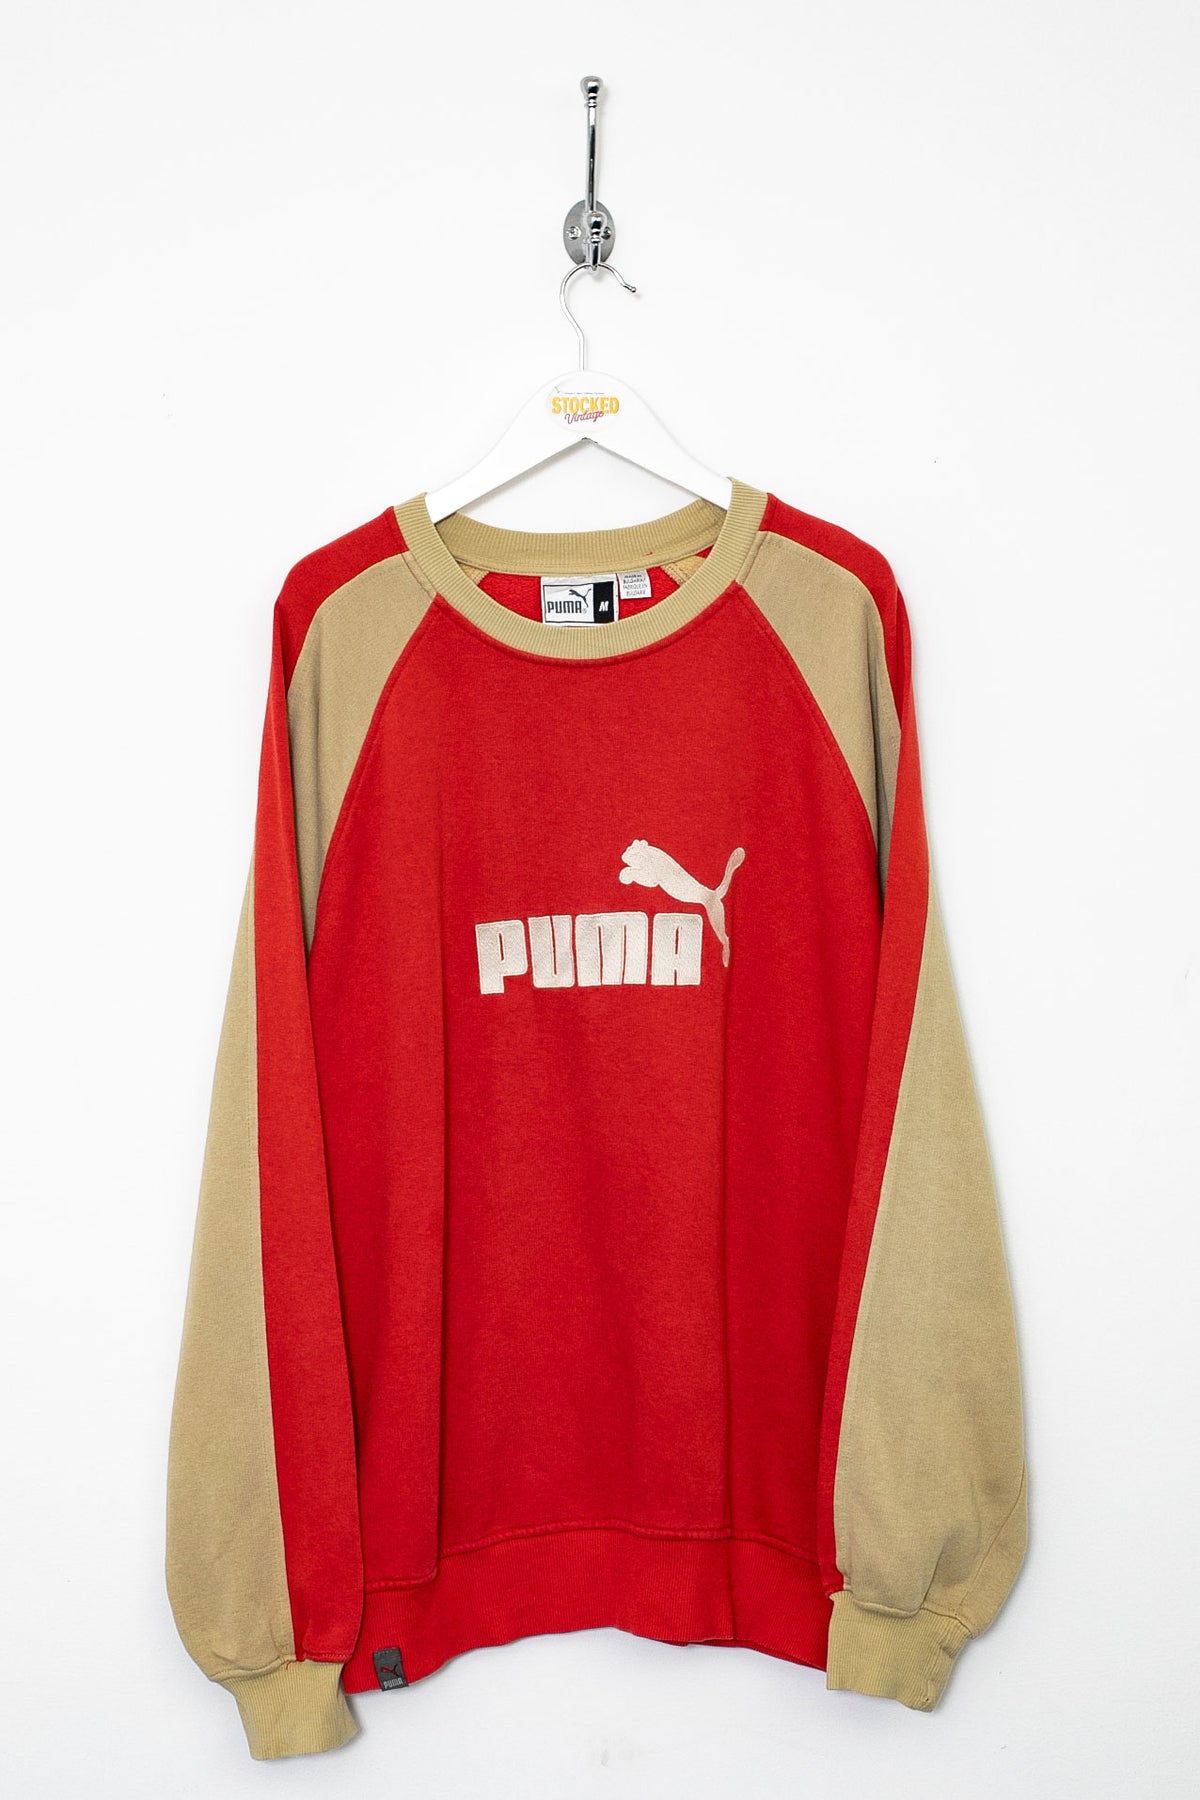 00s Puma Sweatshirt (L)